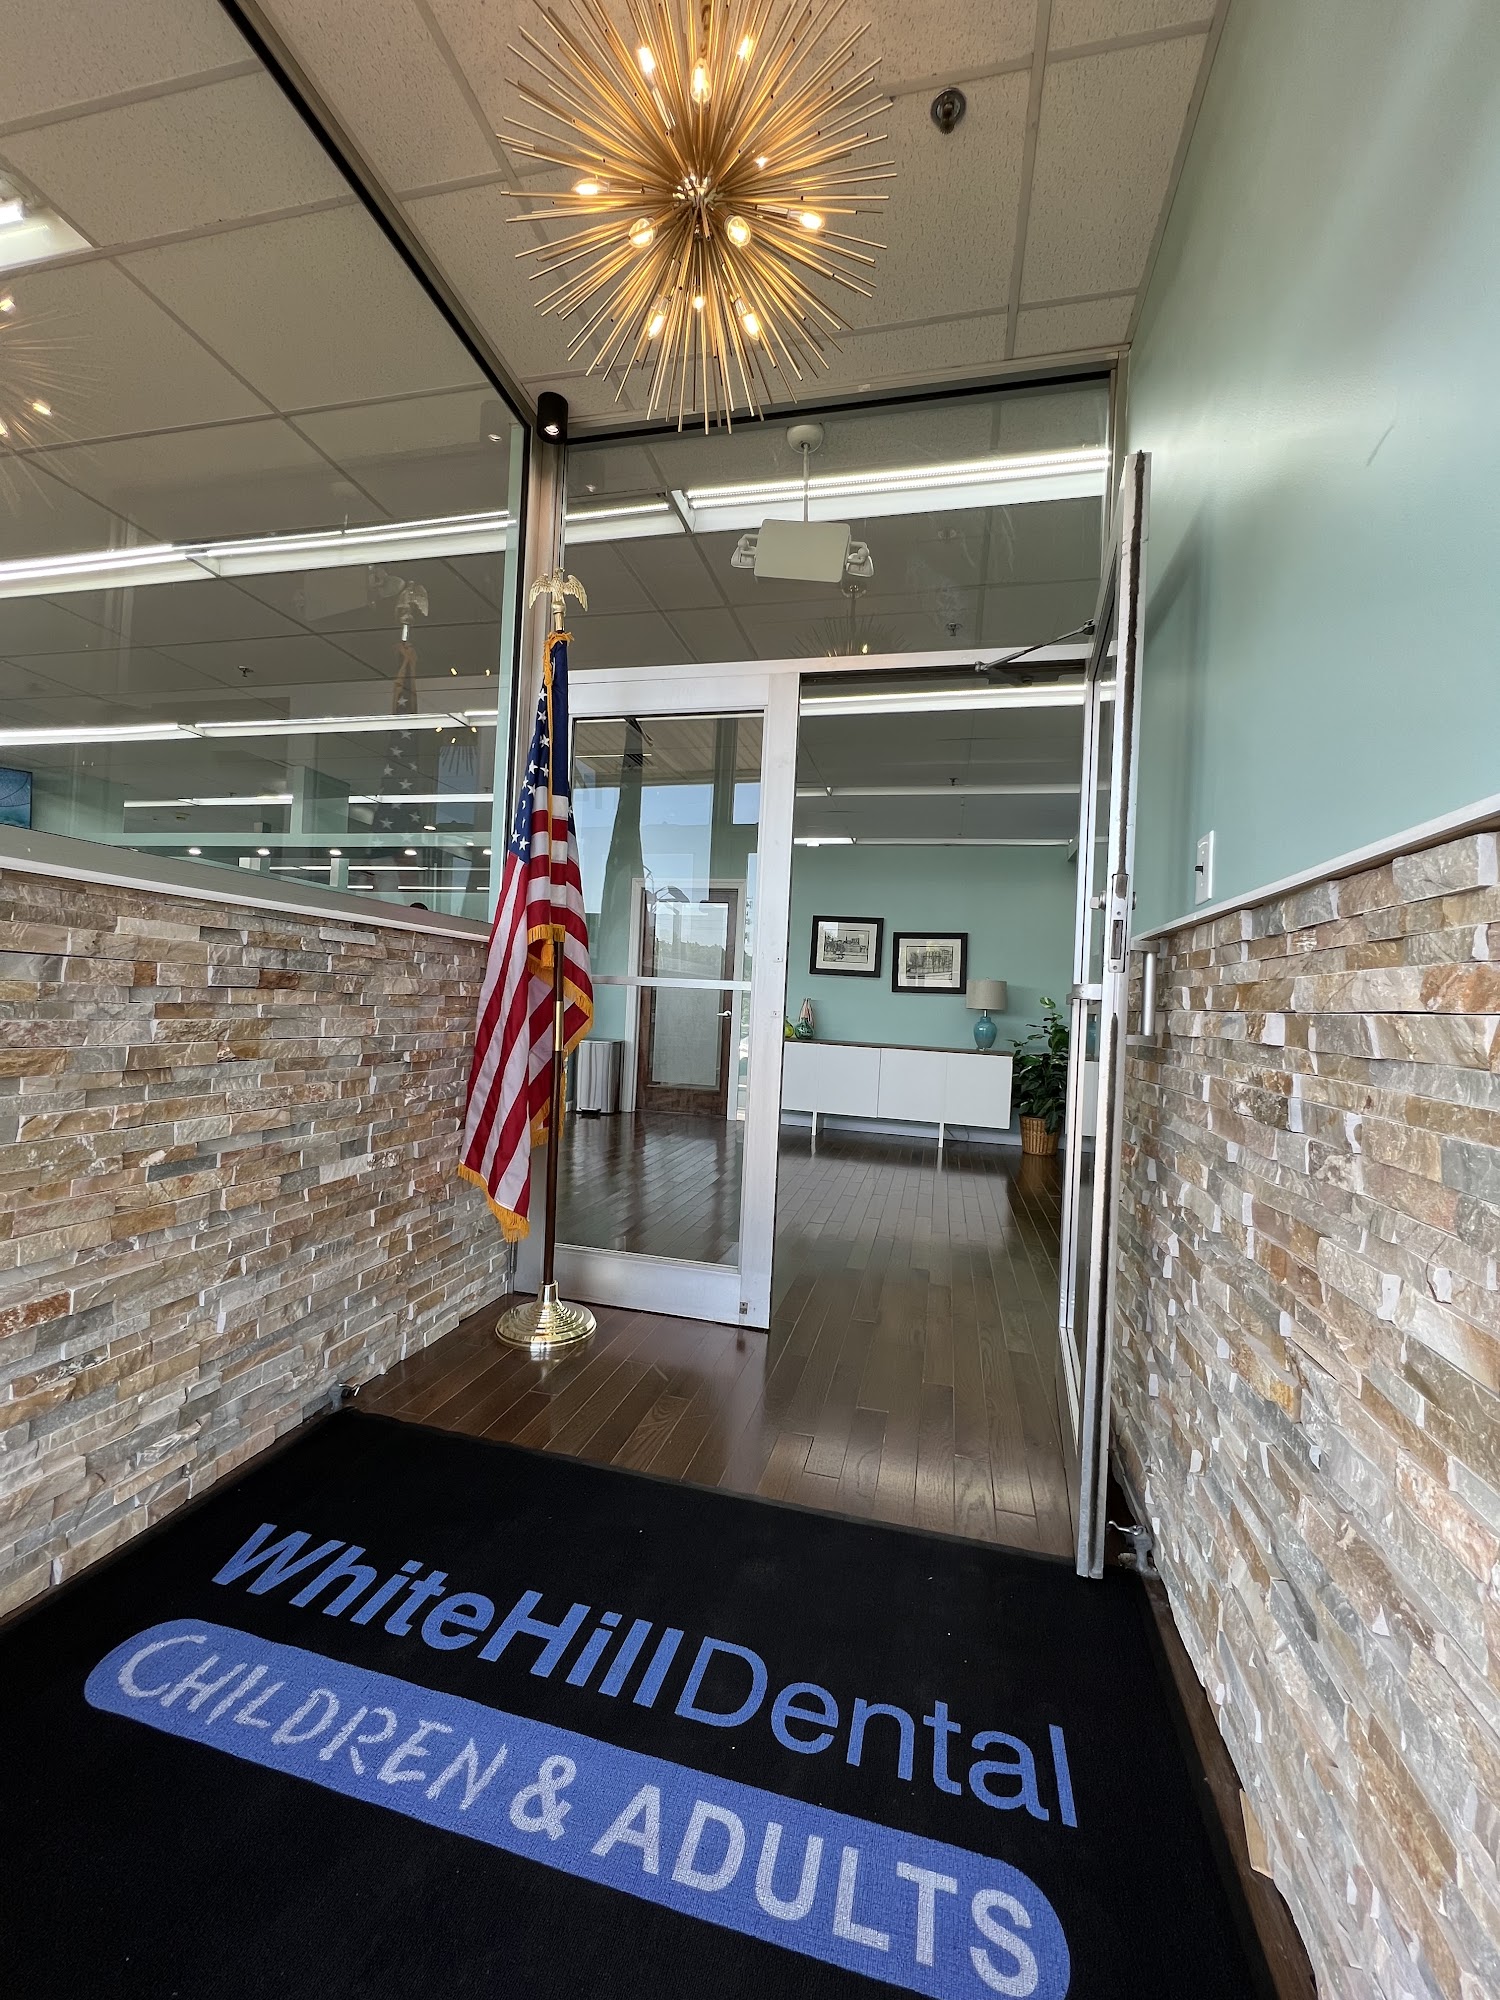 White Hill Dental